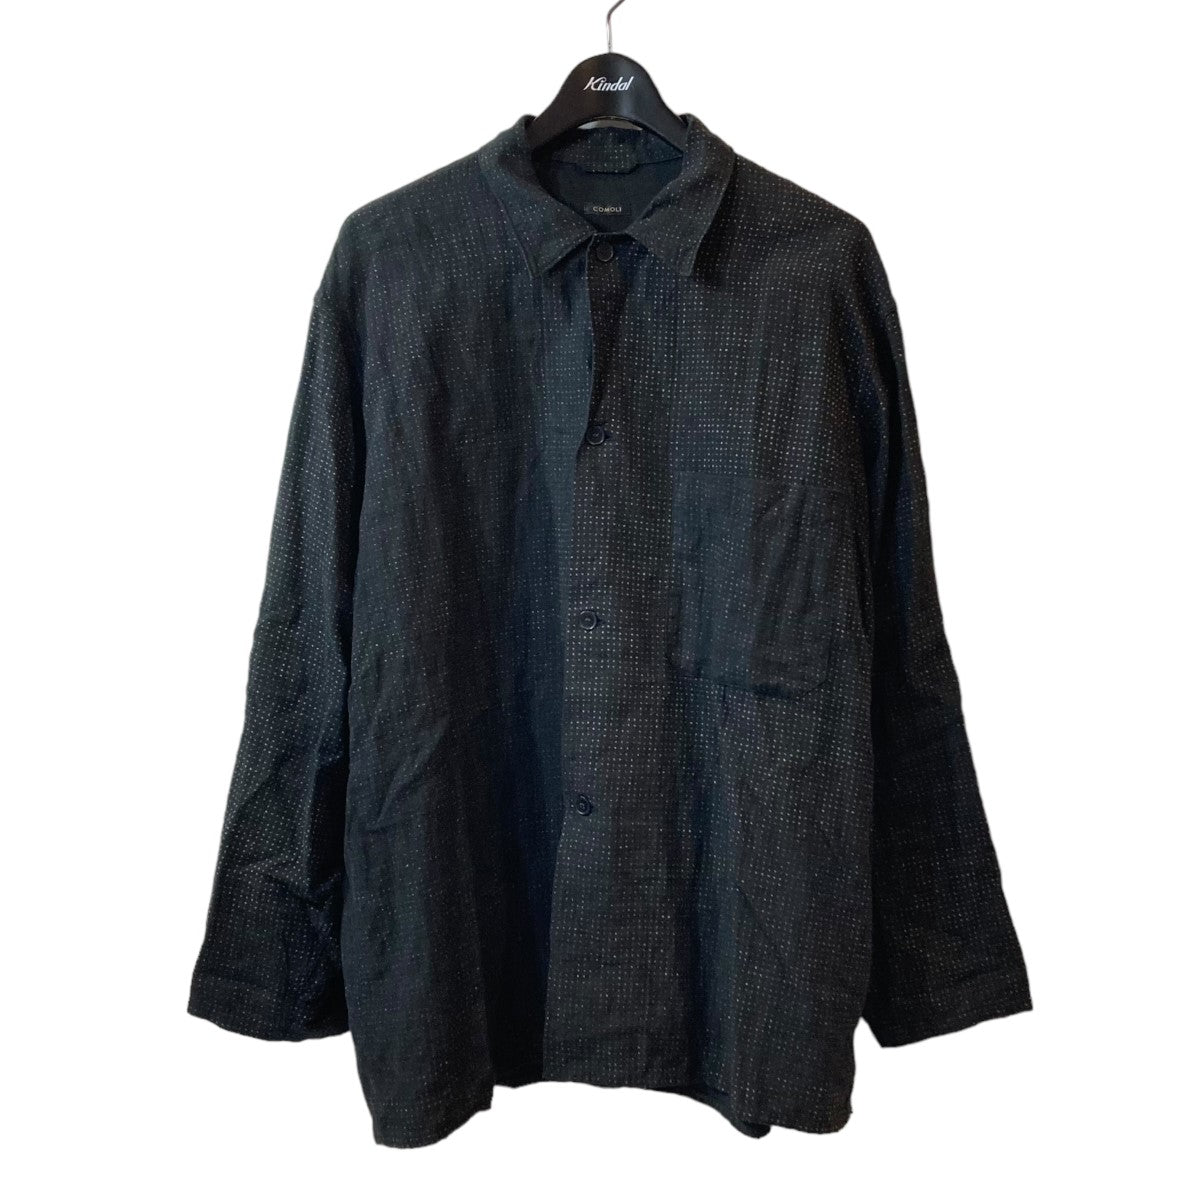 COMOLI(コモリ) リネンドットシャツジャケット X01-01027 X01-01027 